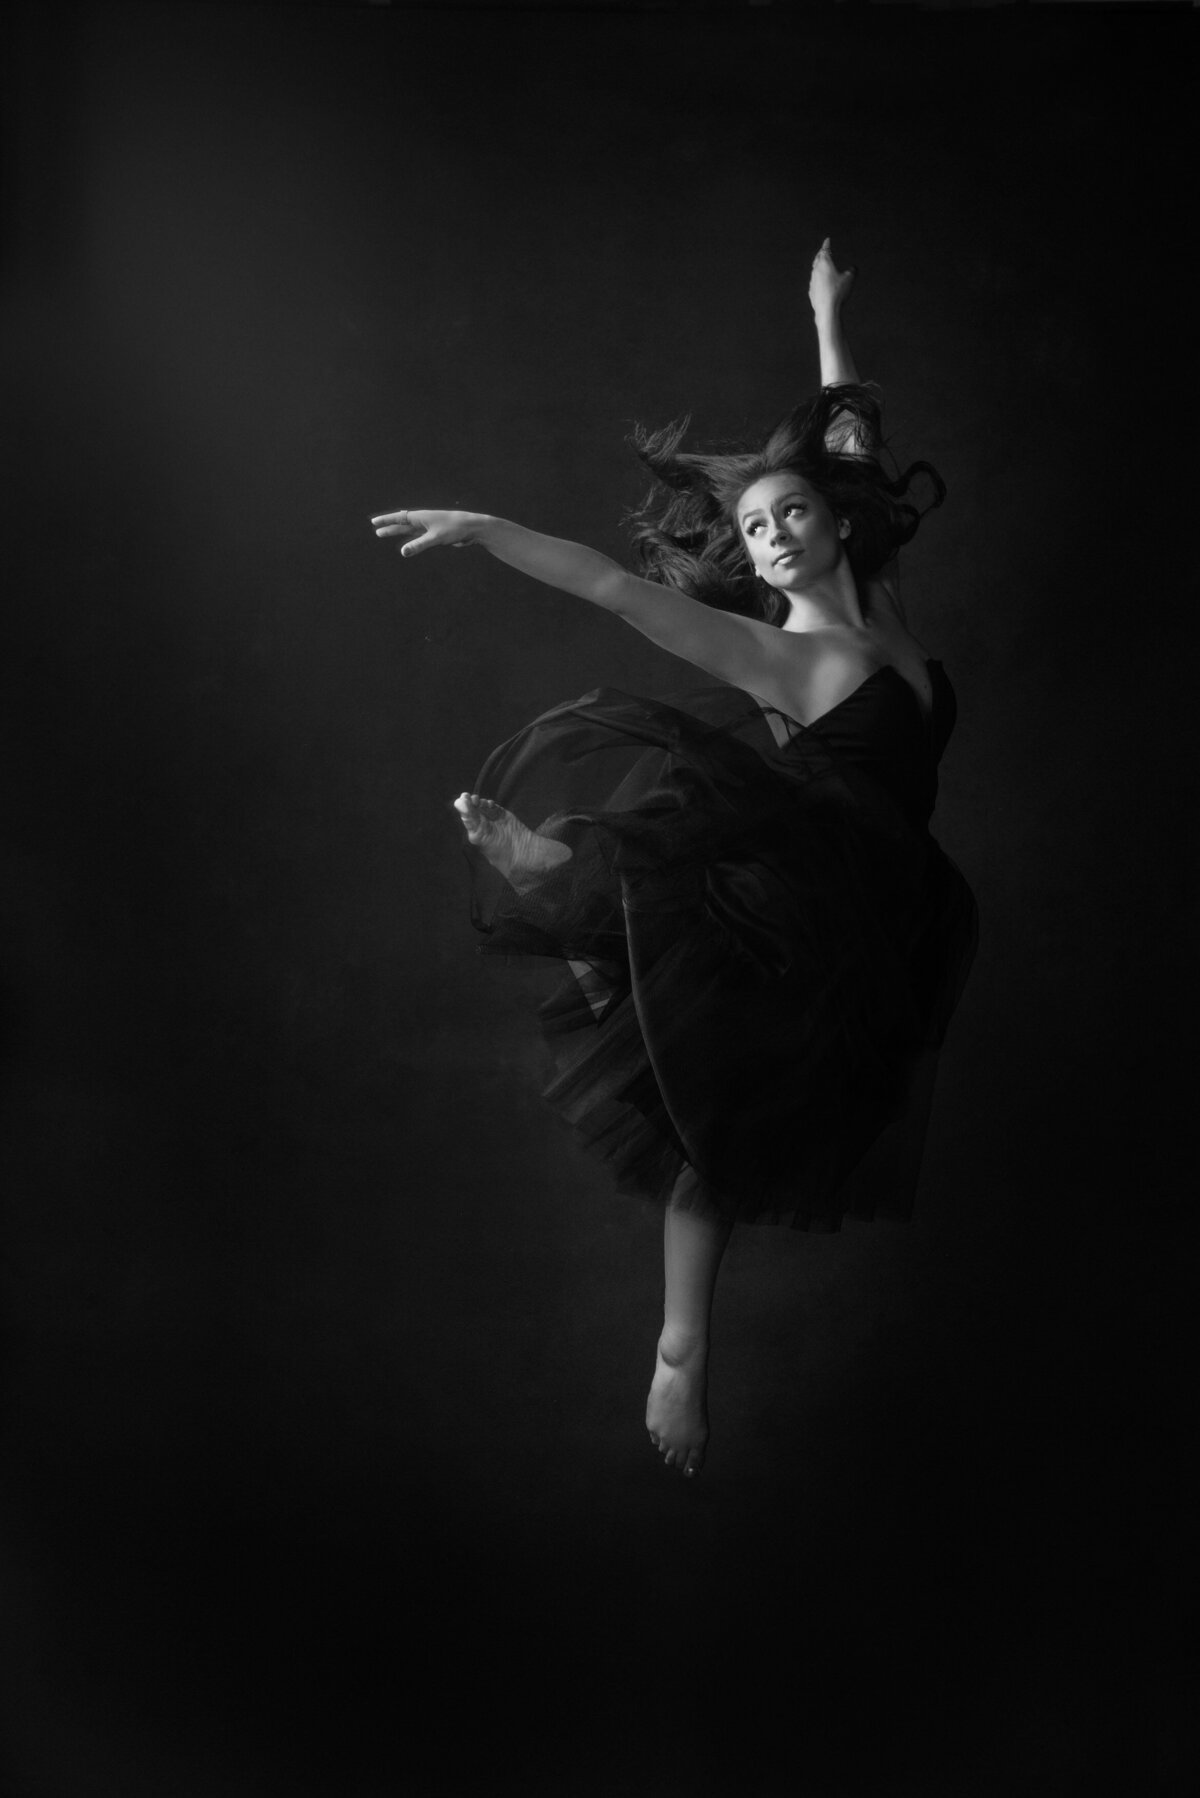 A ballet dancer jumping up.